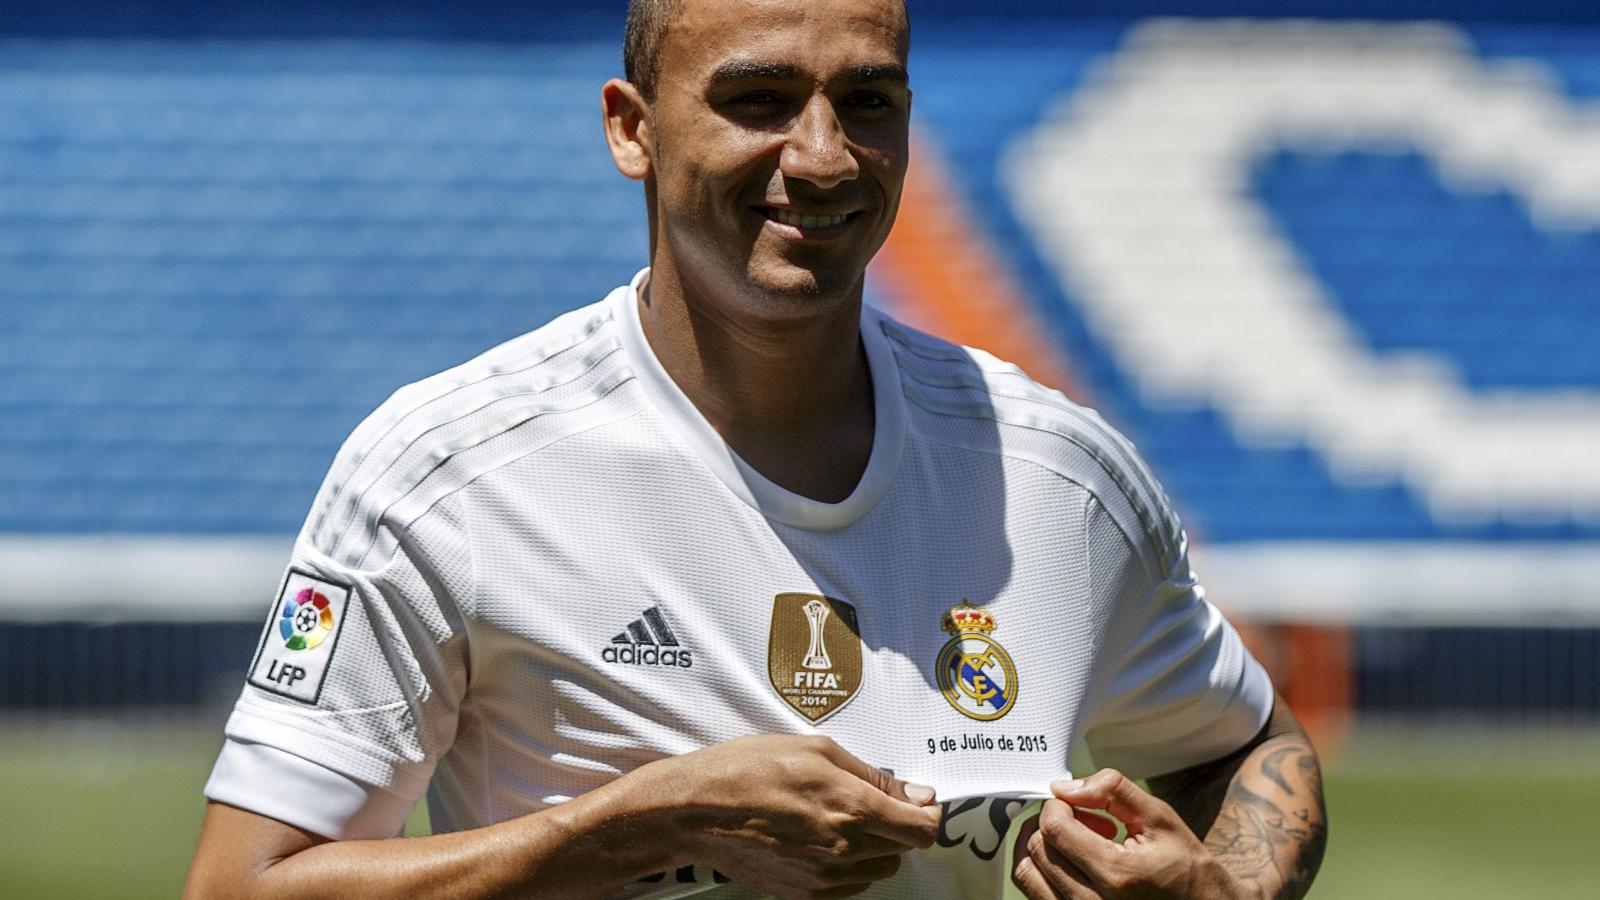 Real Madrid Players Wallpaper Danilo Luiz Da Silva For Squad